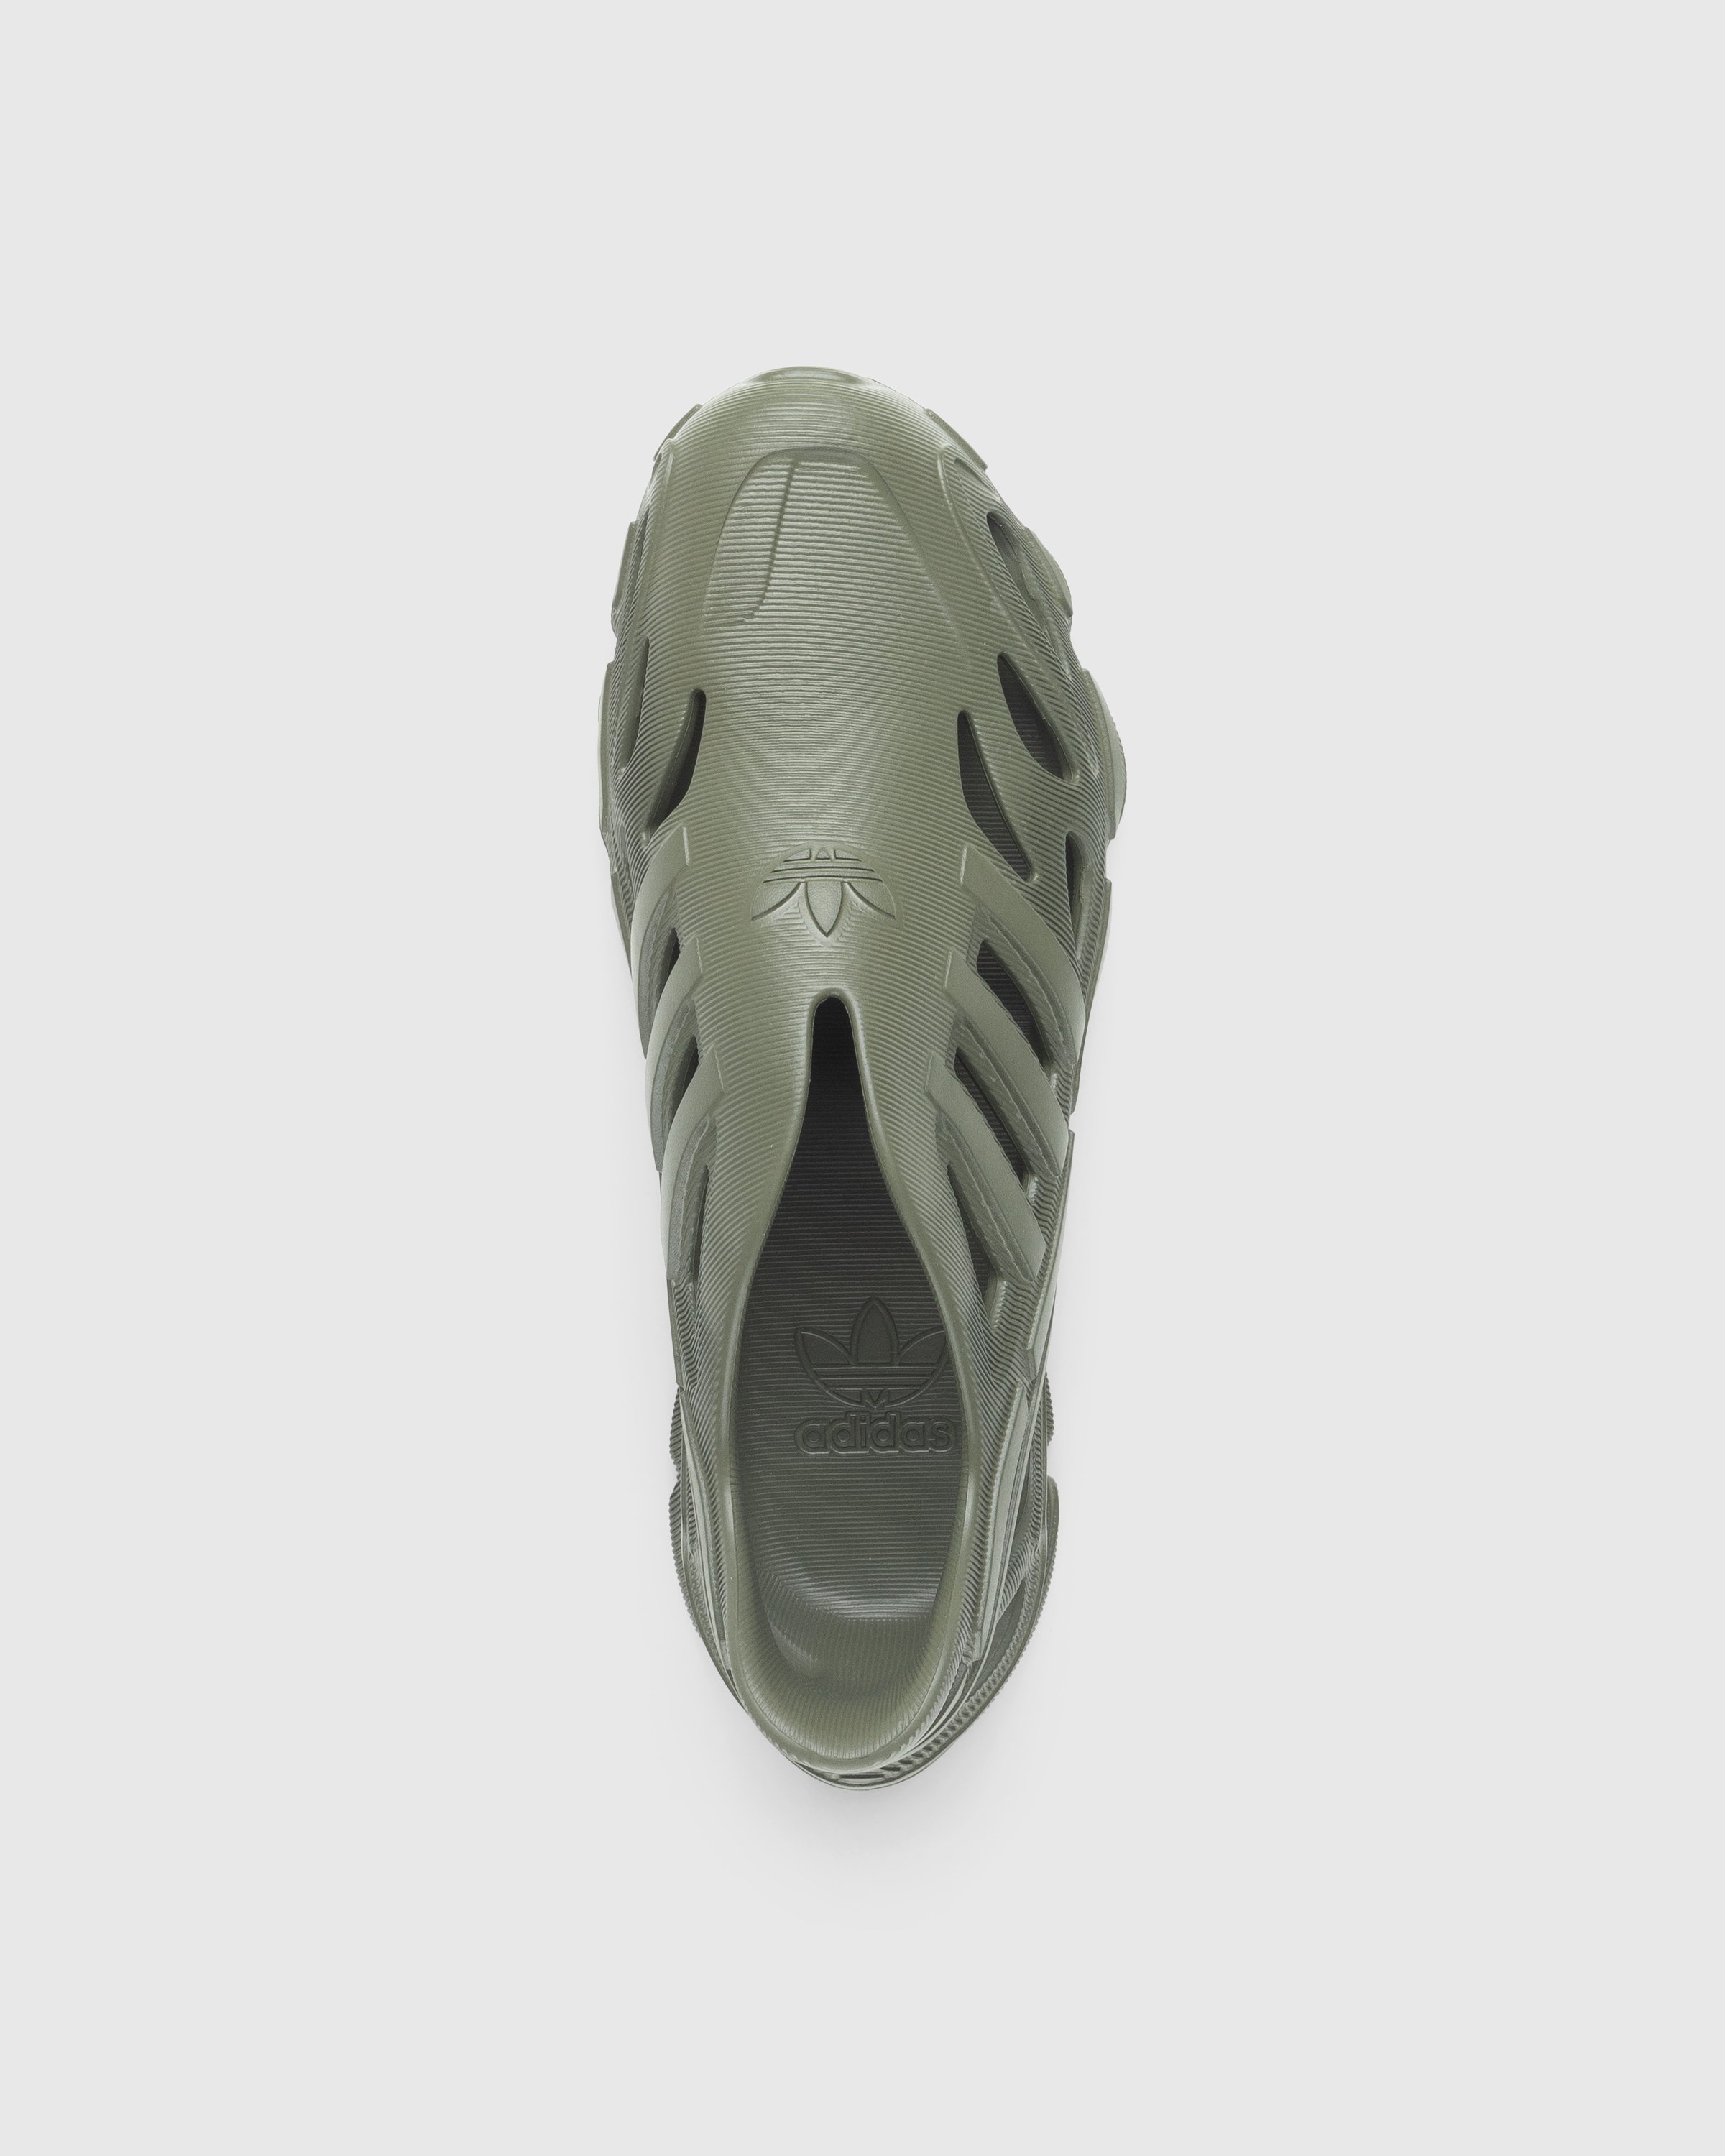 Adidas - Adifom Supernova Focus Olive - Footwear - Green - Image 5